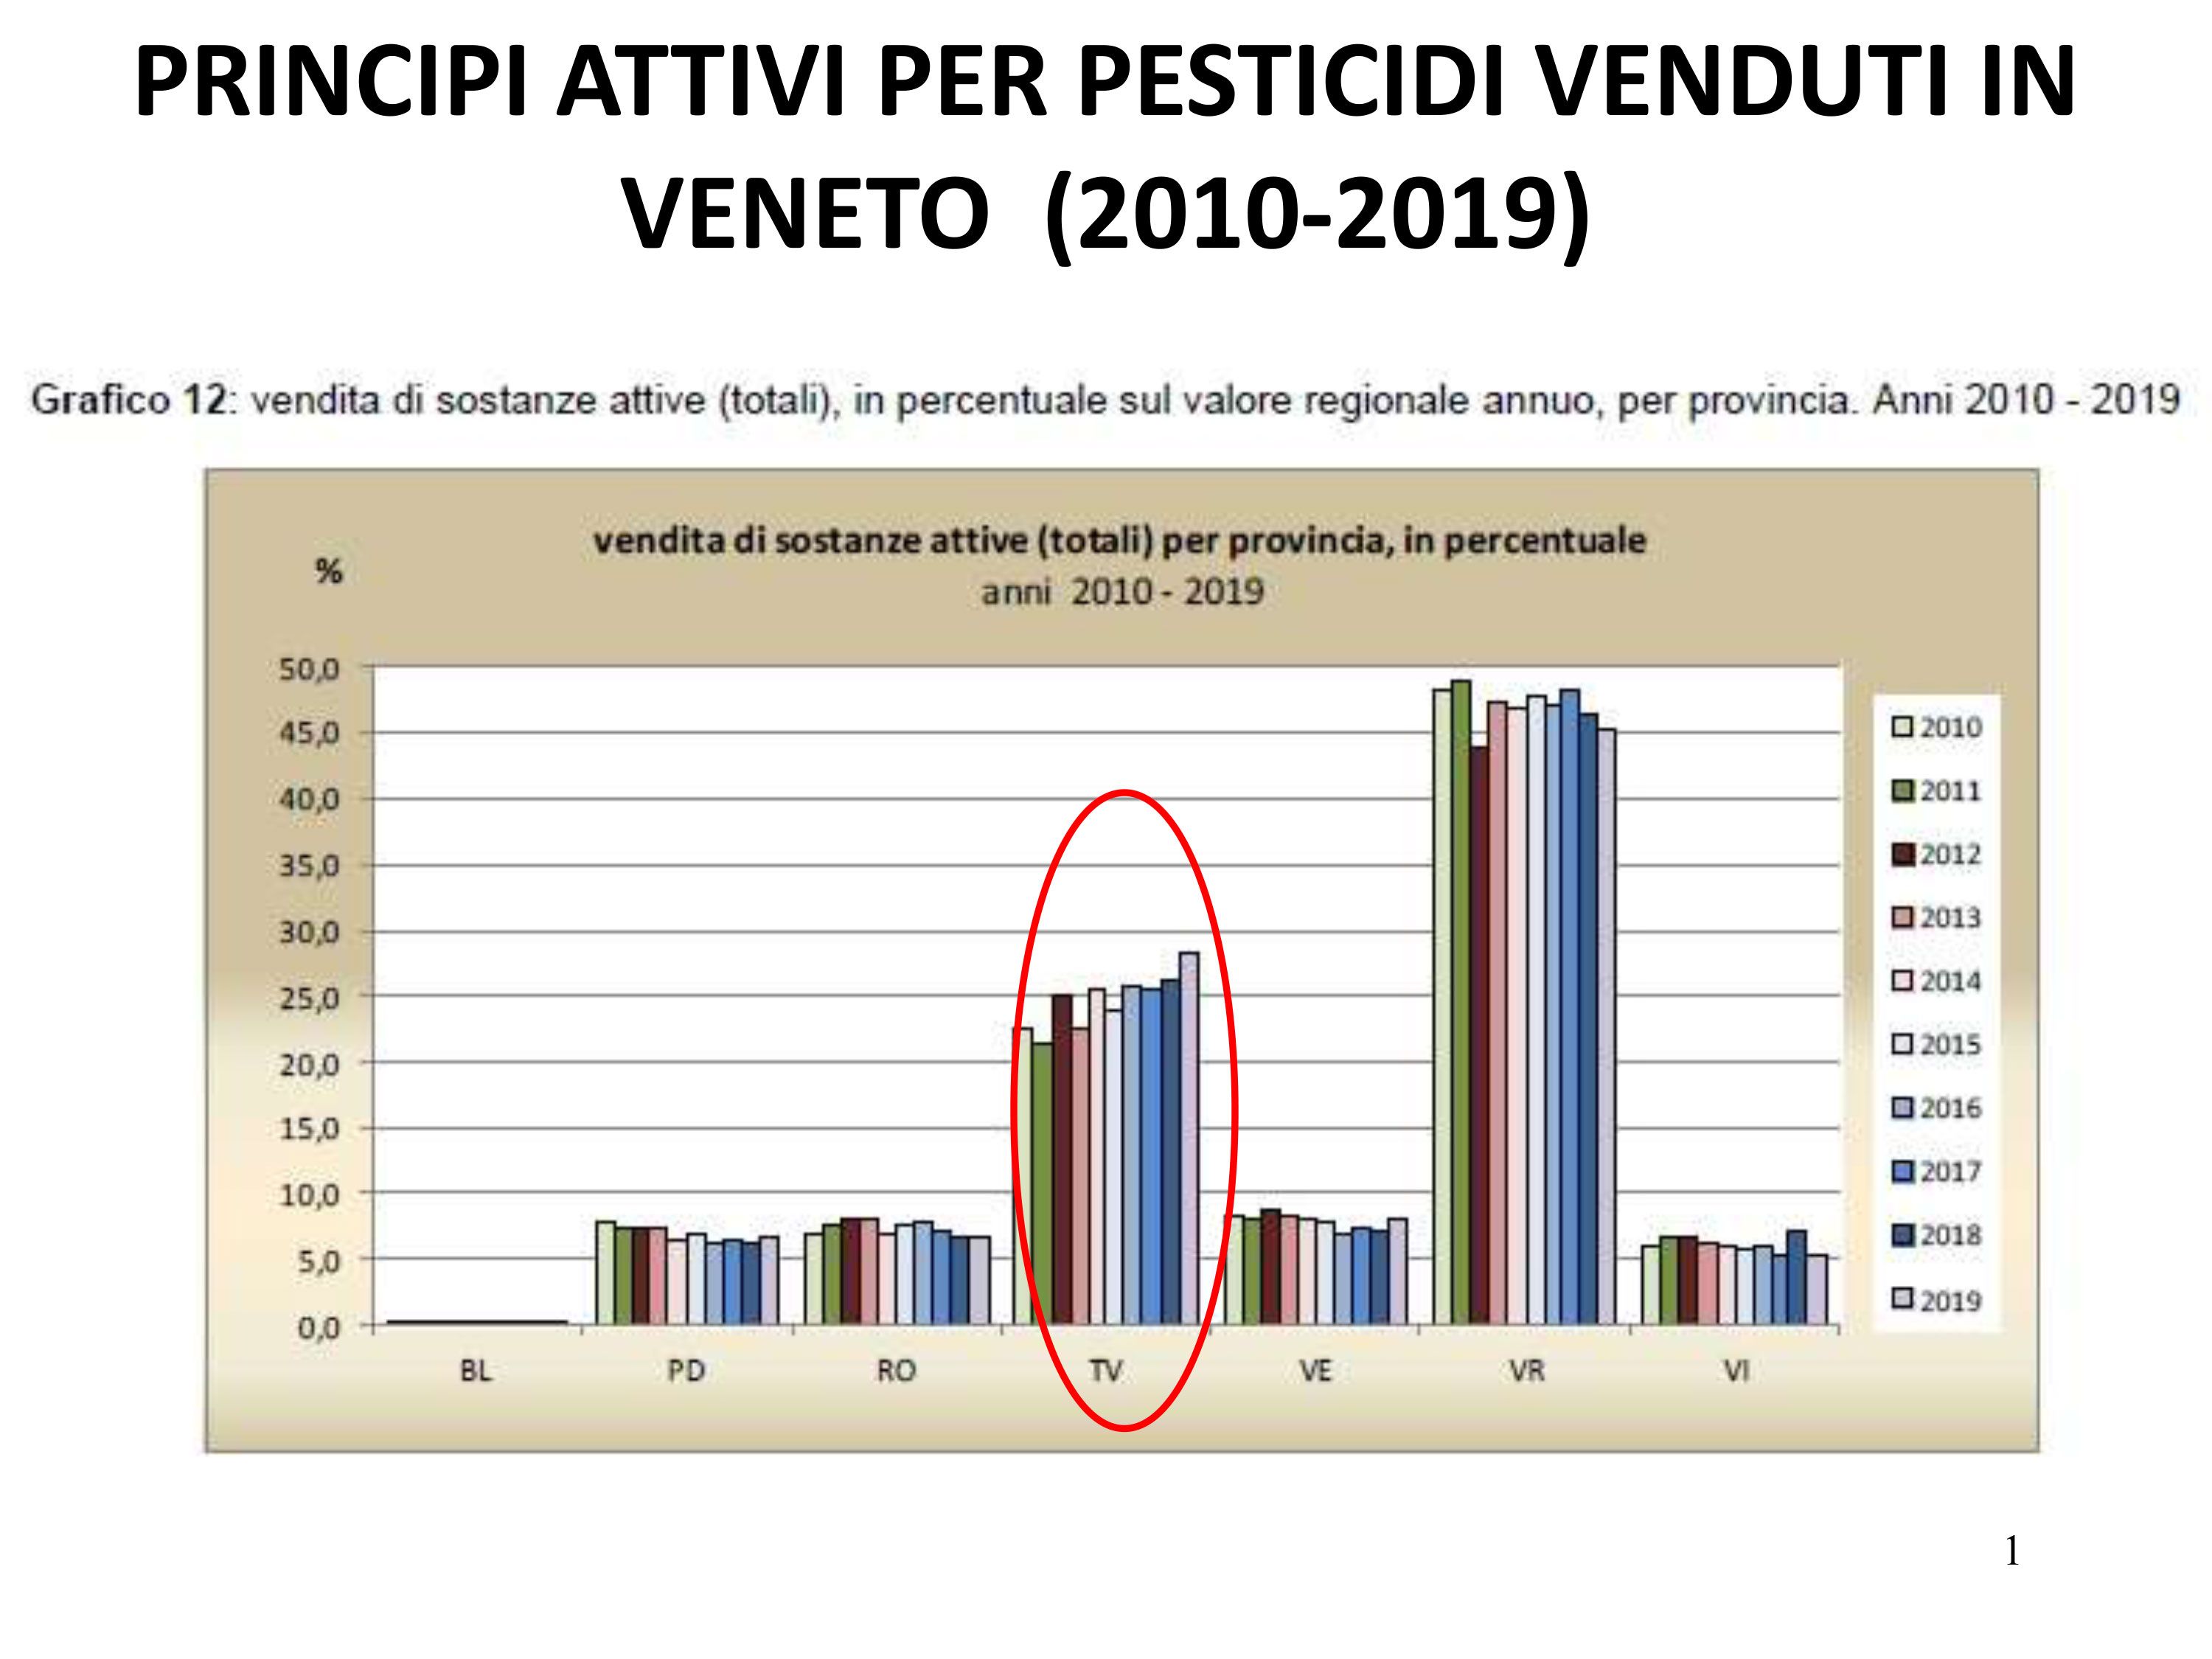 Pesticidi---Veneto-vendita-pesticidi-per-provincia---(Fonte-Rapporto-ARPAV-FAS-2020)